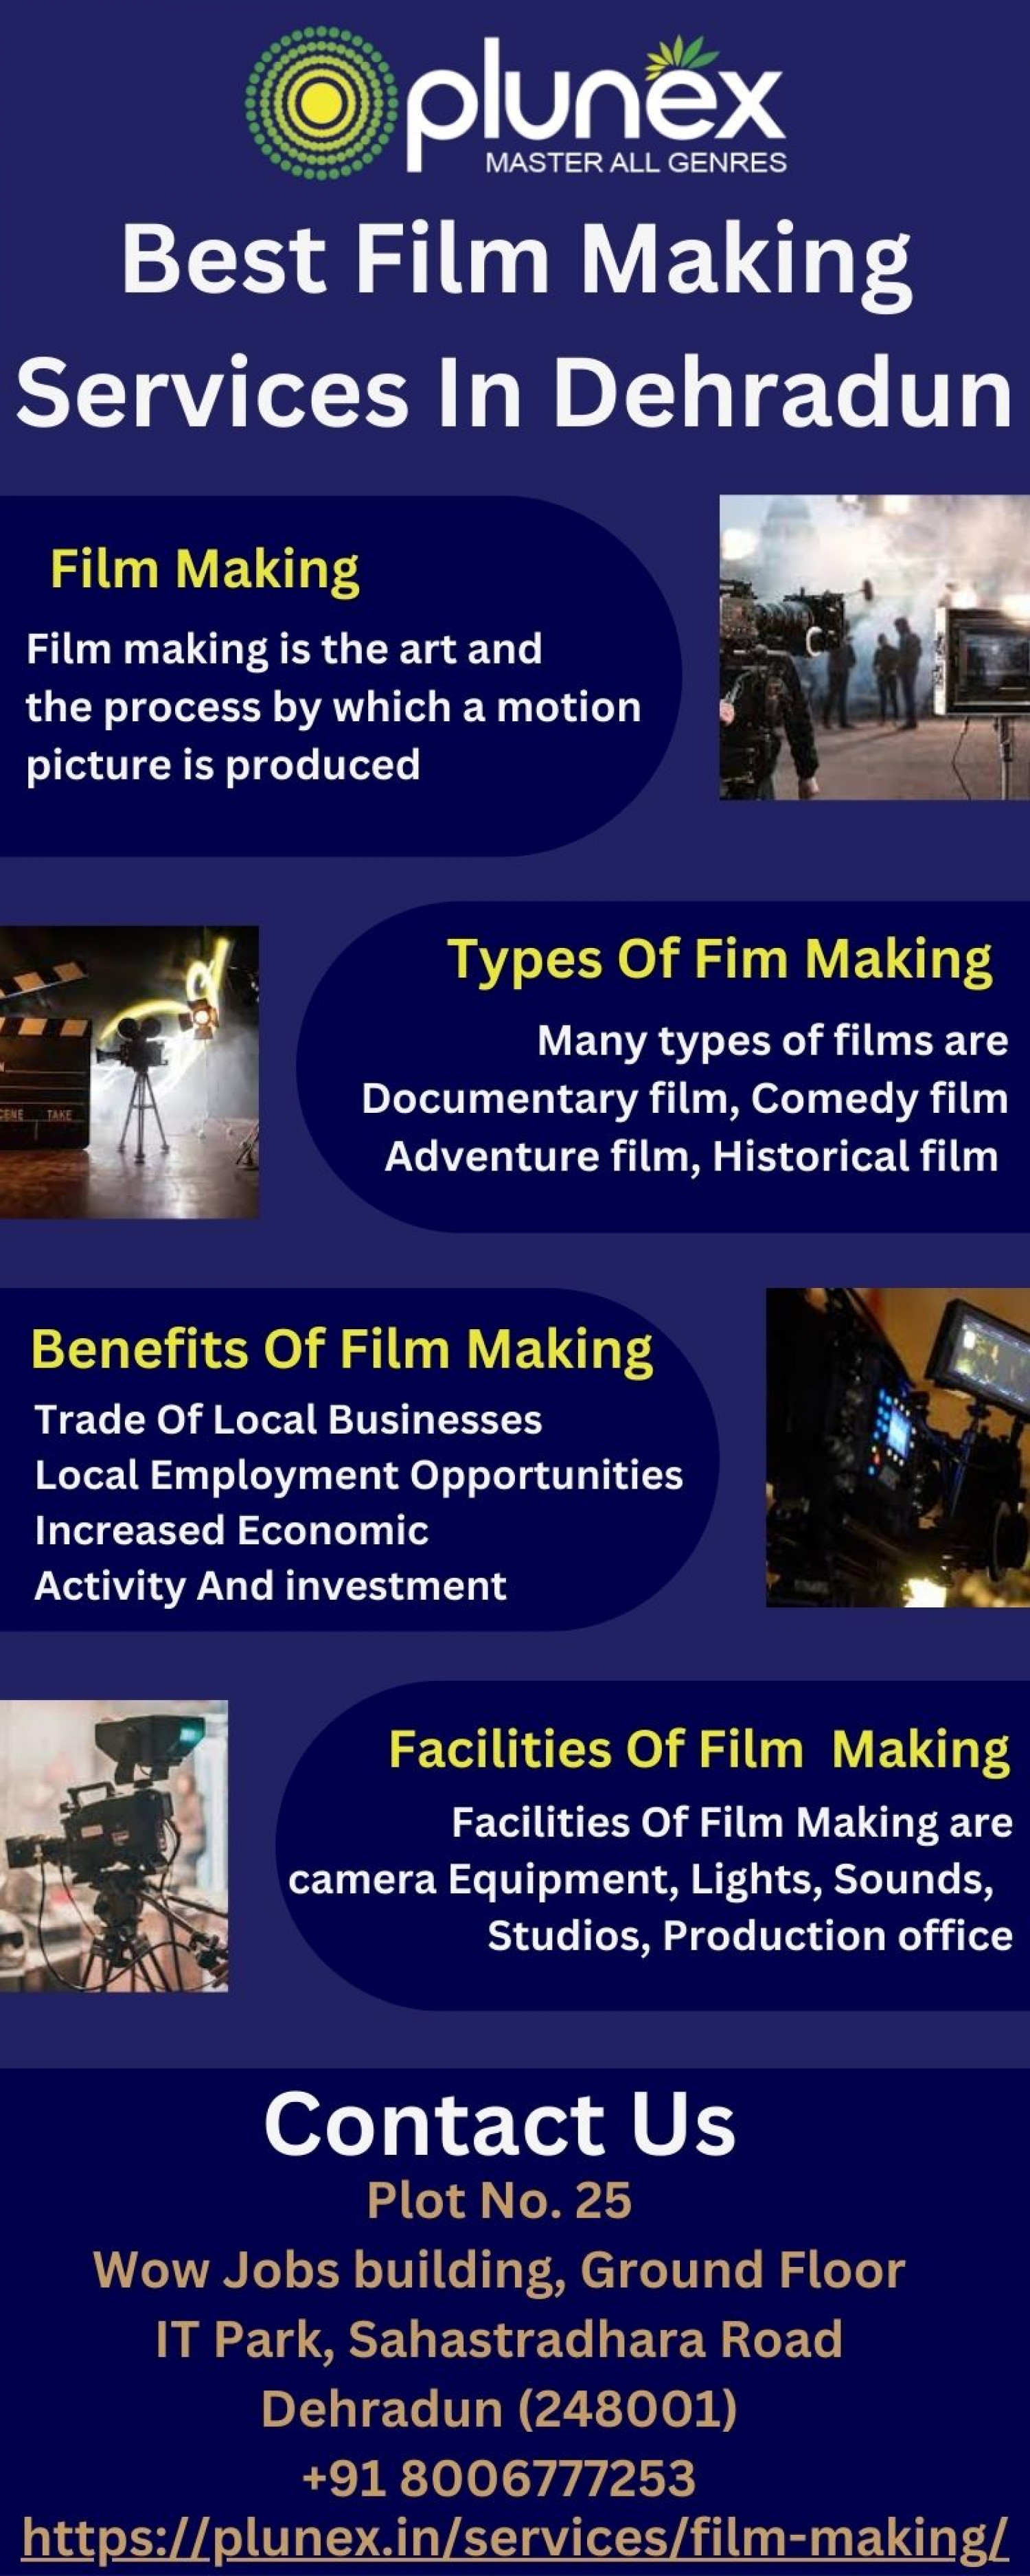 Best Film Making Services In Dehradun Infographic